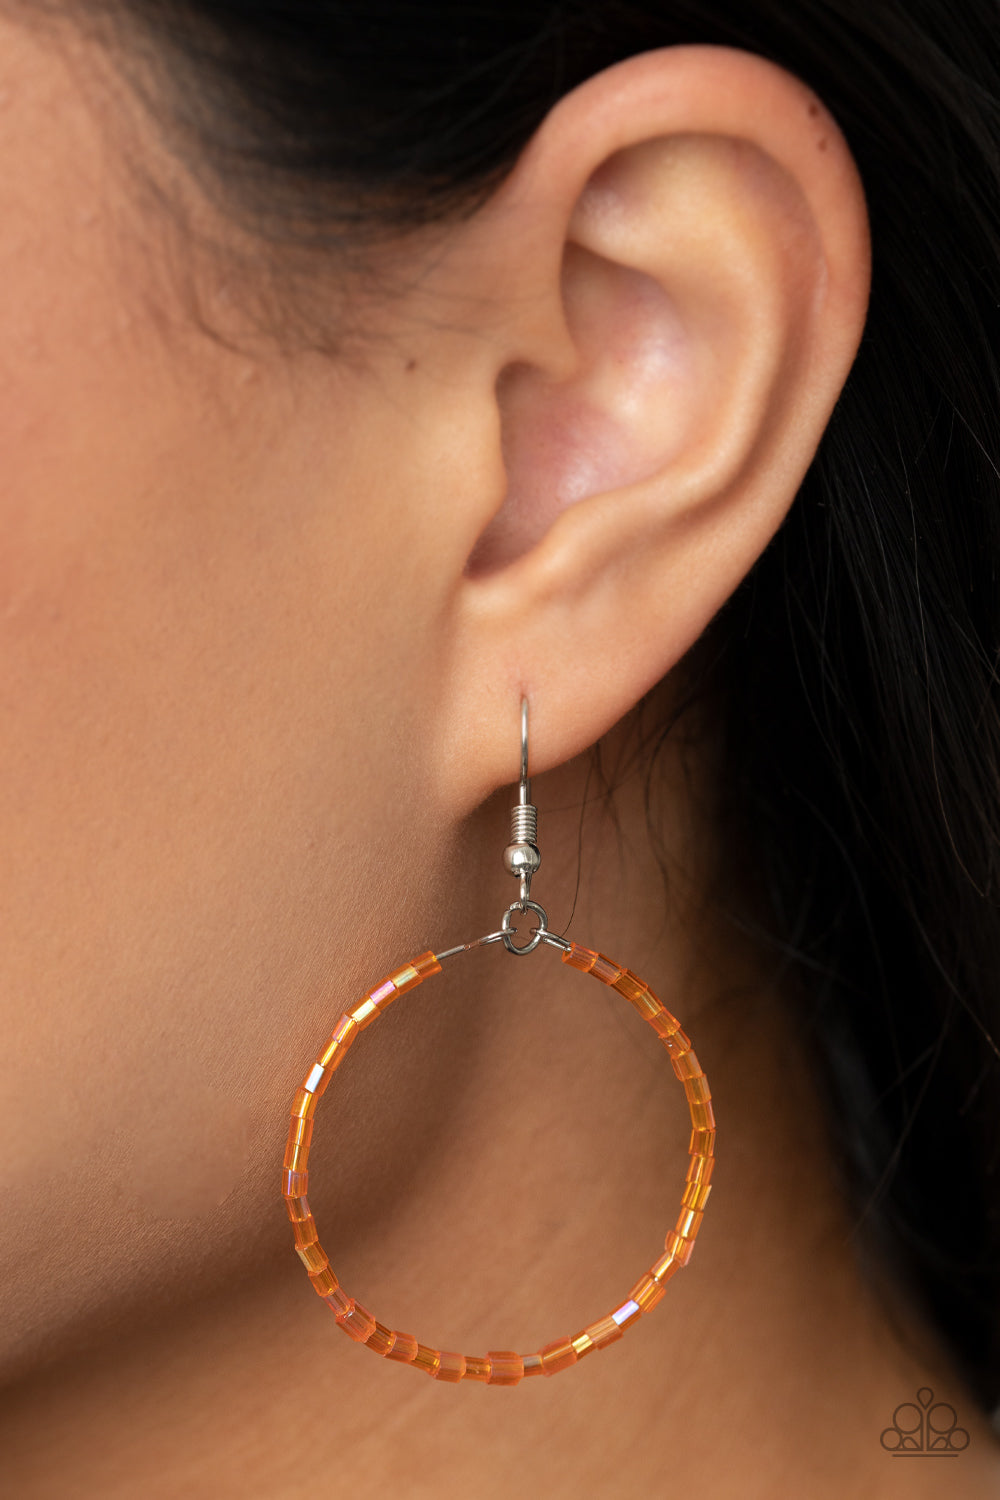 Colorfully Curvy - Orange Earrings